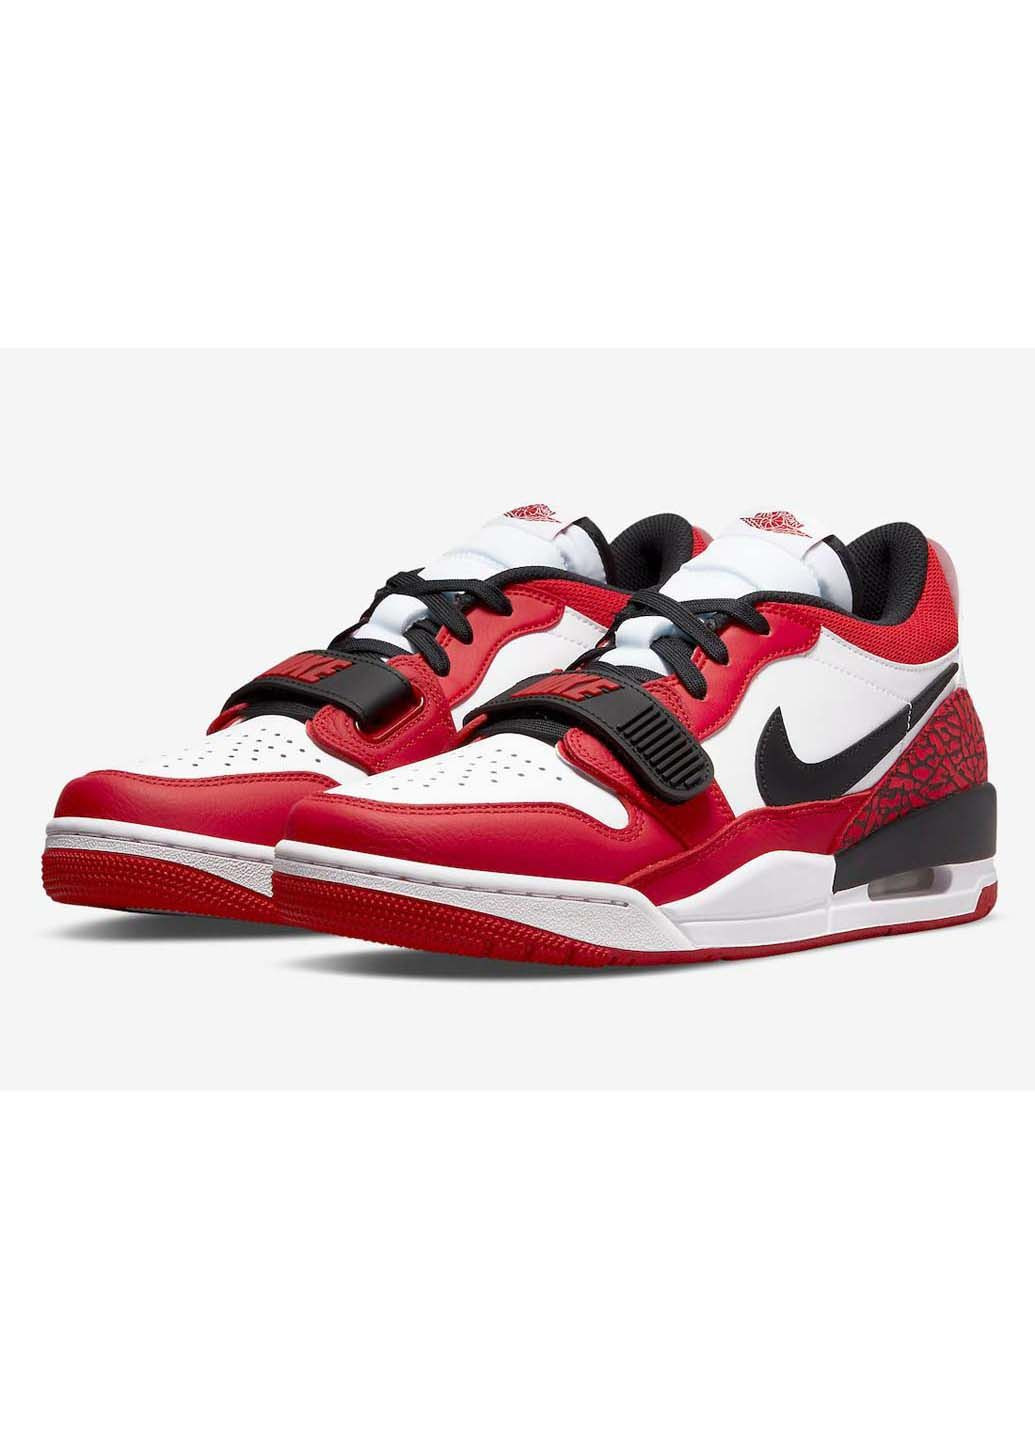 Красные демисезонные кроссовки мужские air legacy 312 low Nike